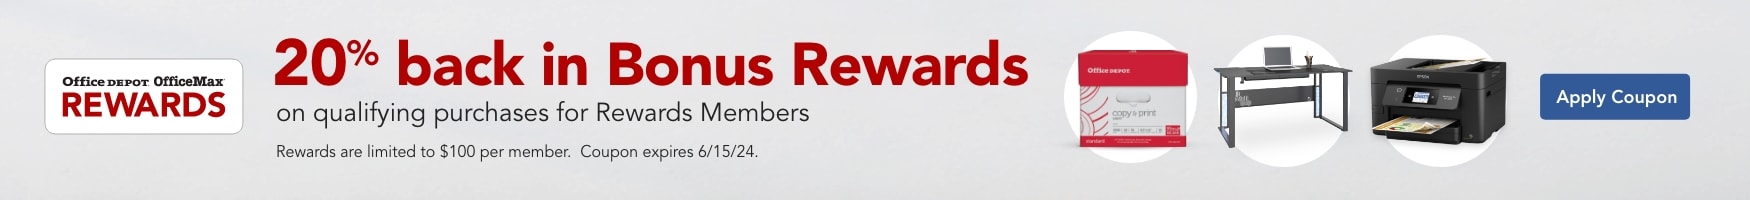 20% back in bonus rewards